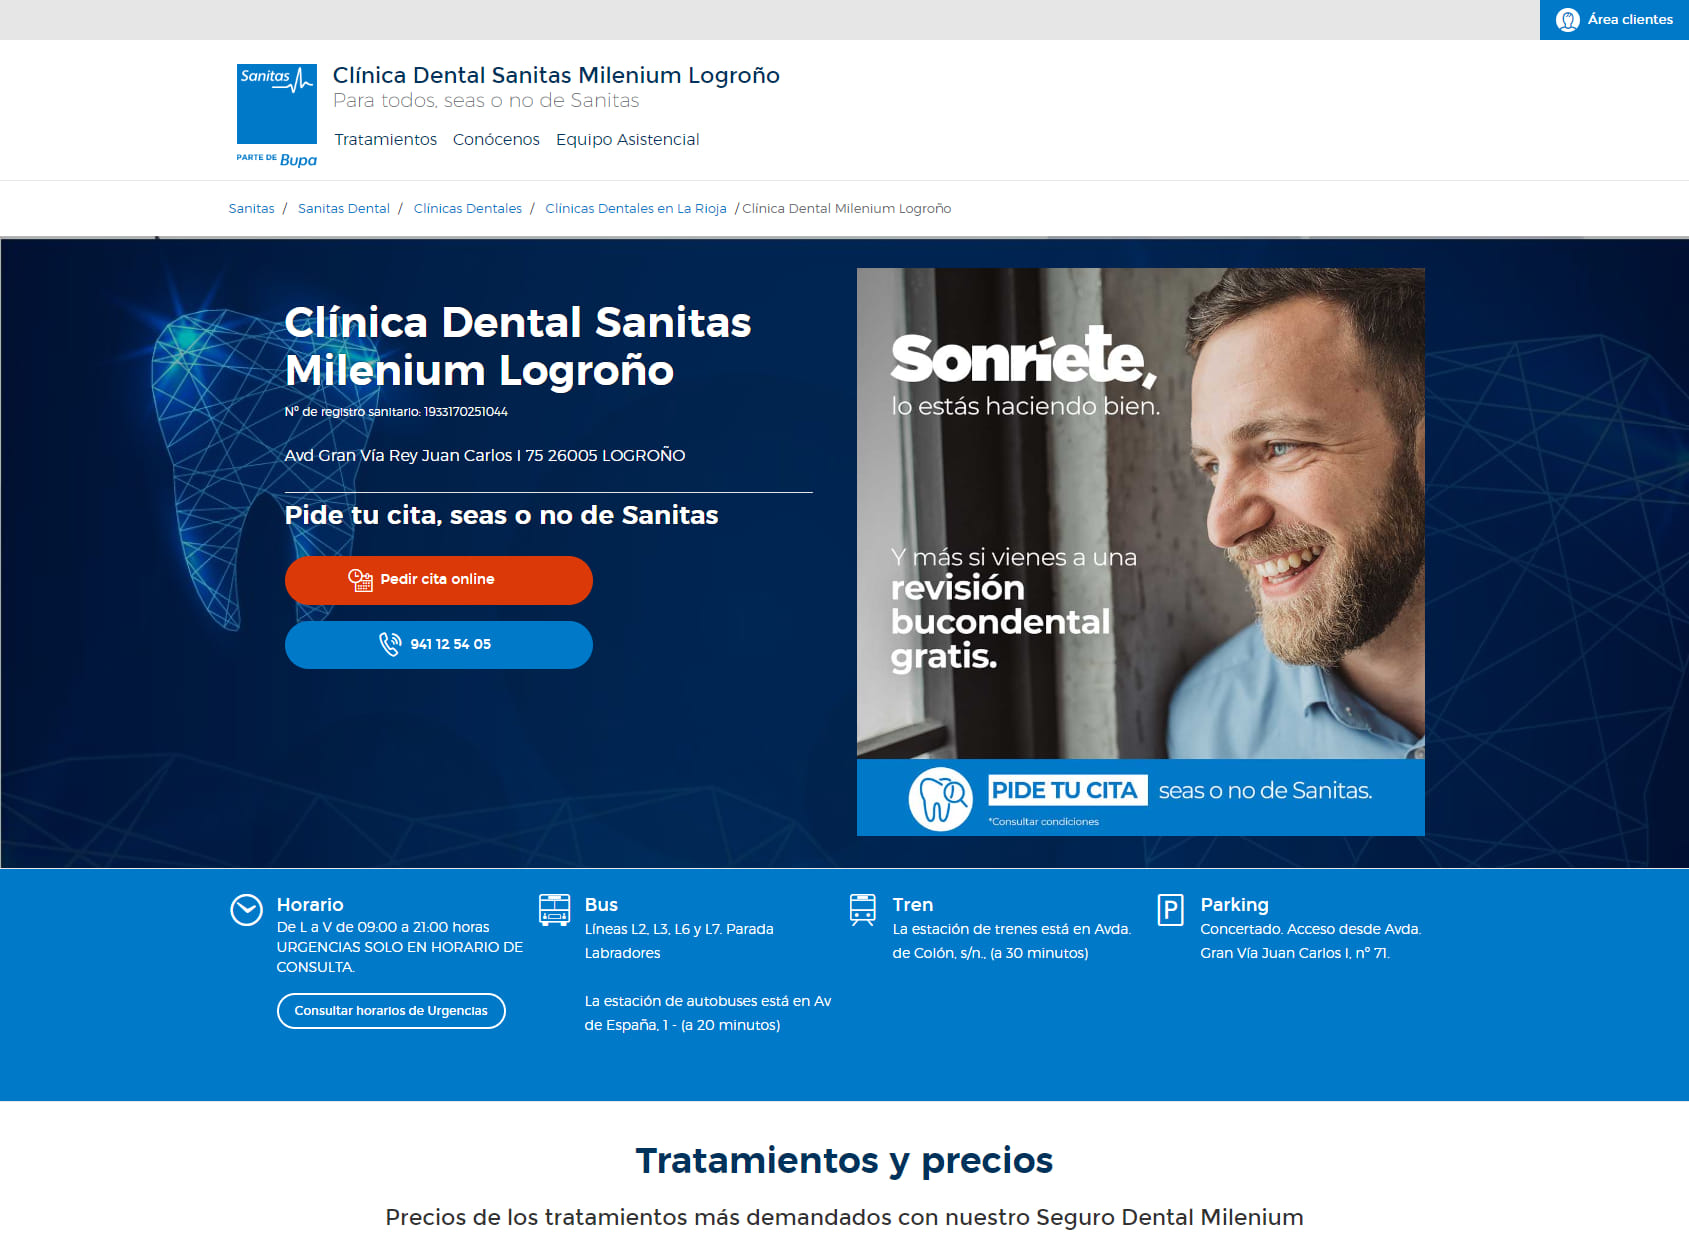 Centro Dental Milenium Logroño - Sanitas